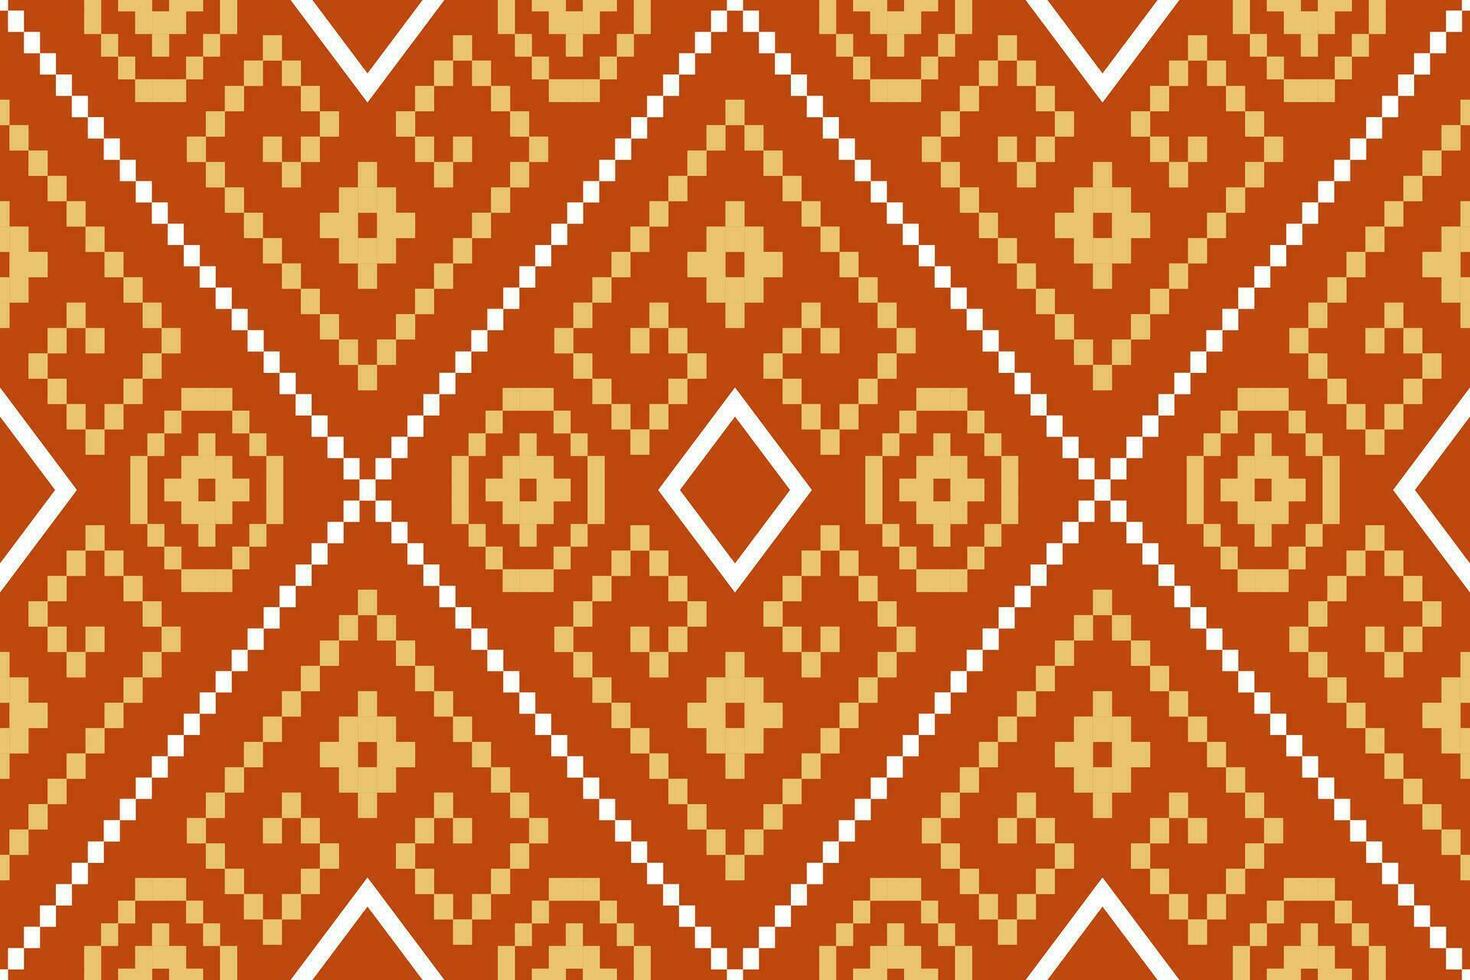 Orange Jahrgänge Kreuz Stich traditionell ethnisch Muster Paisley Blume Ikat Hintergrund abstrakt aztekisch afrikanisch indonesisch indisch nahtlos Muster zum Stoff drucken Stoff Kleid Teppich Vorhänge und Sarong vektor